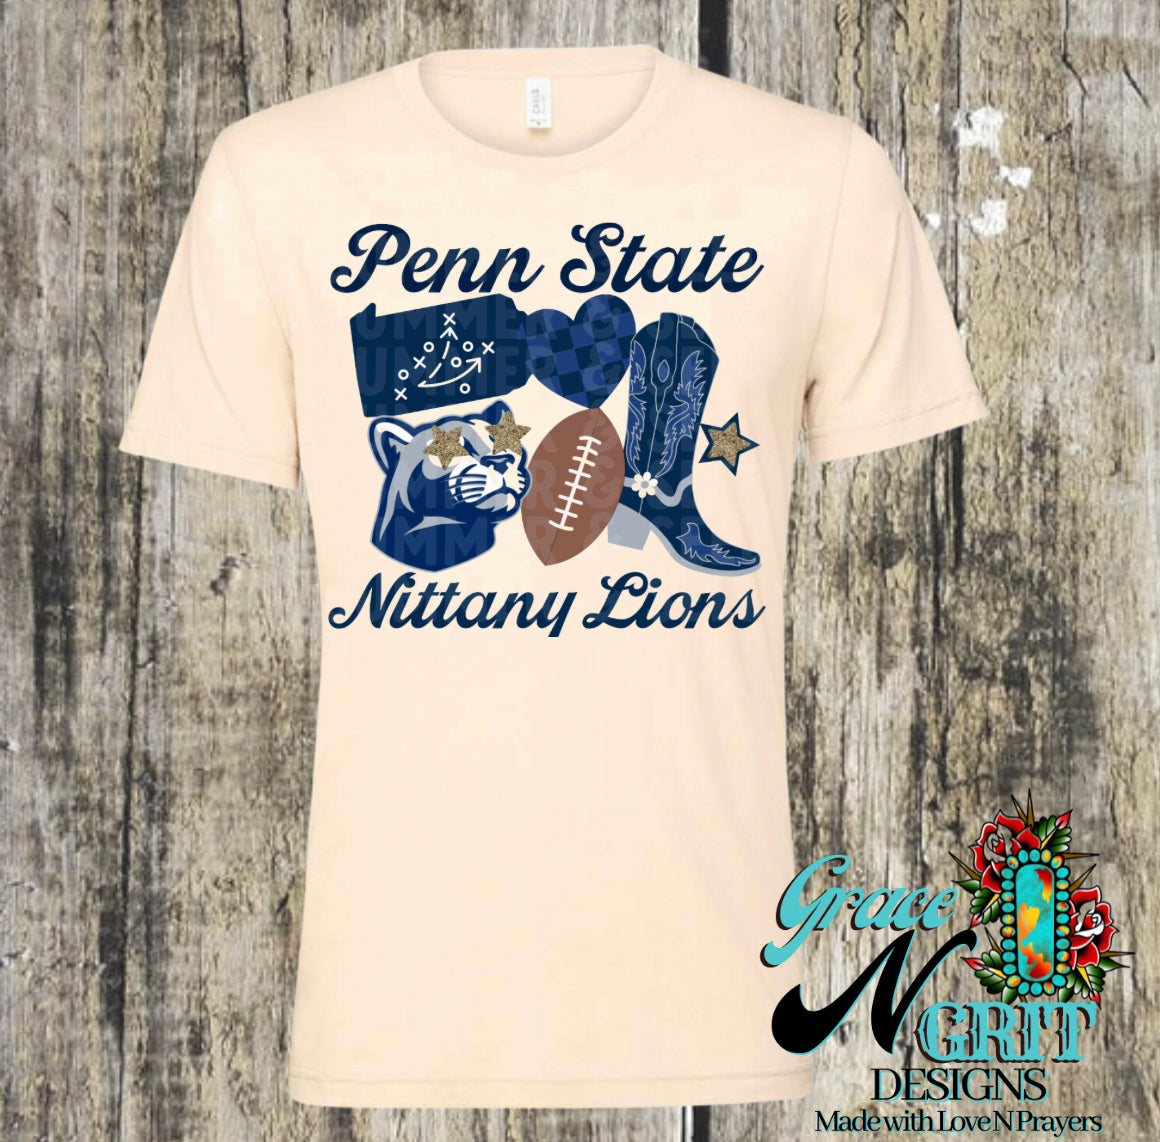 Penn State Tee